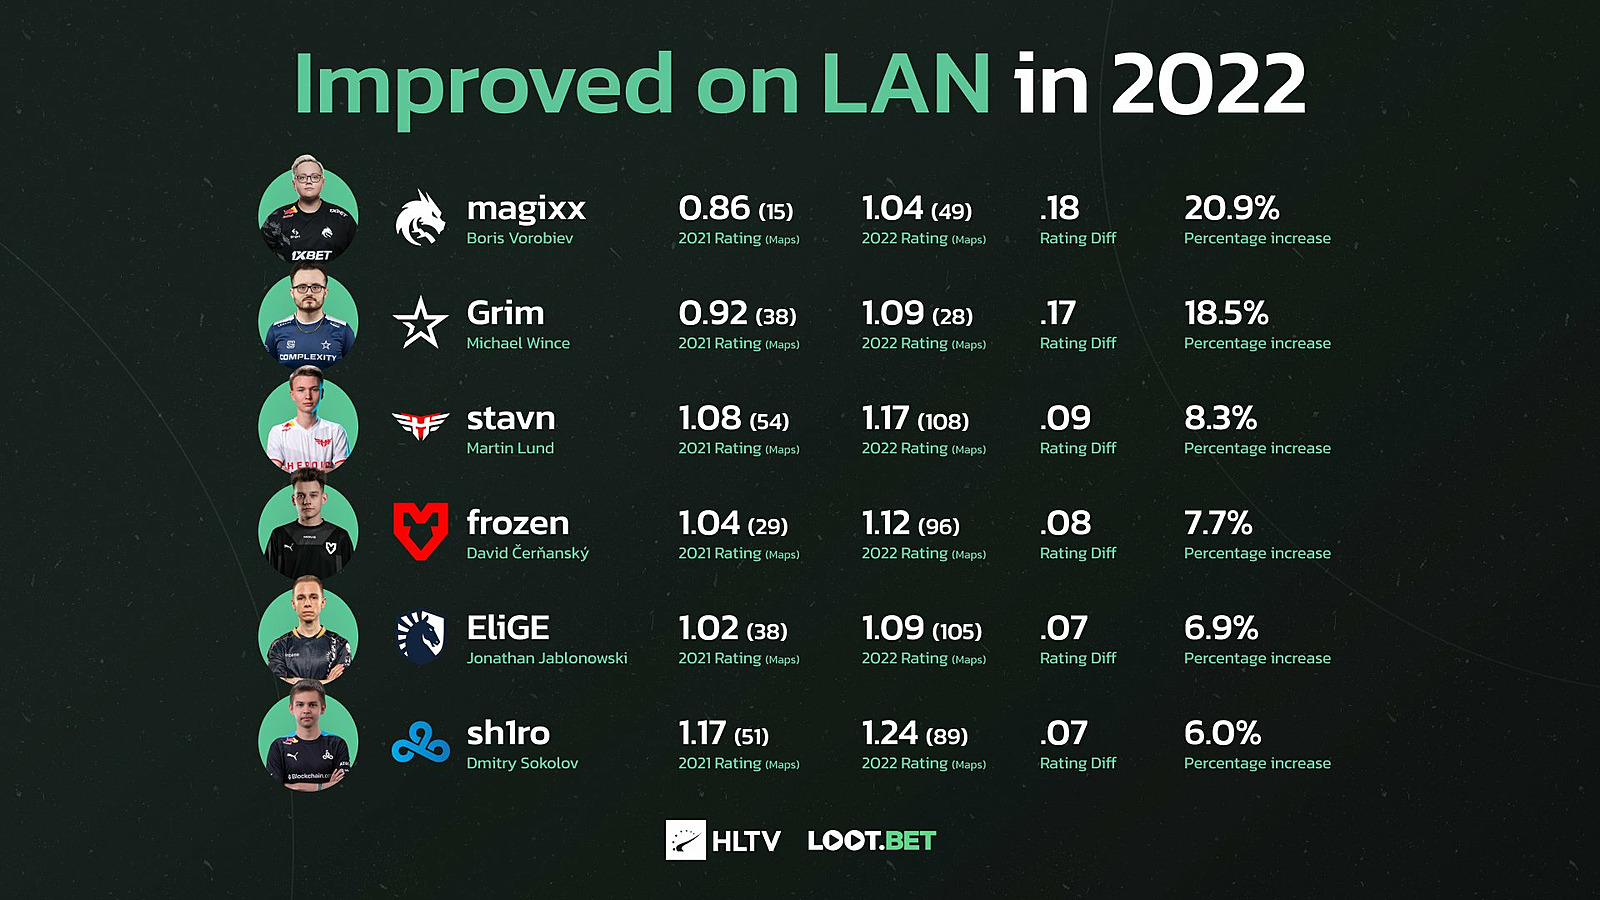 Топ-6 игроков с самым большим ростом рейтинга на LAN в 2022 году